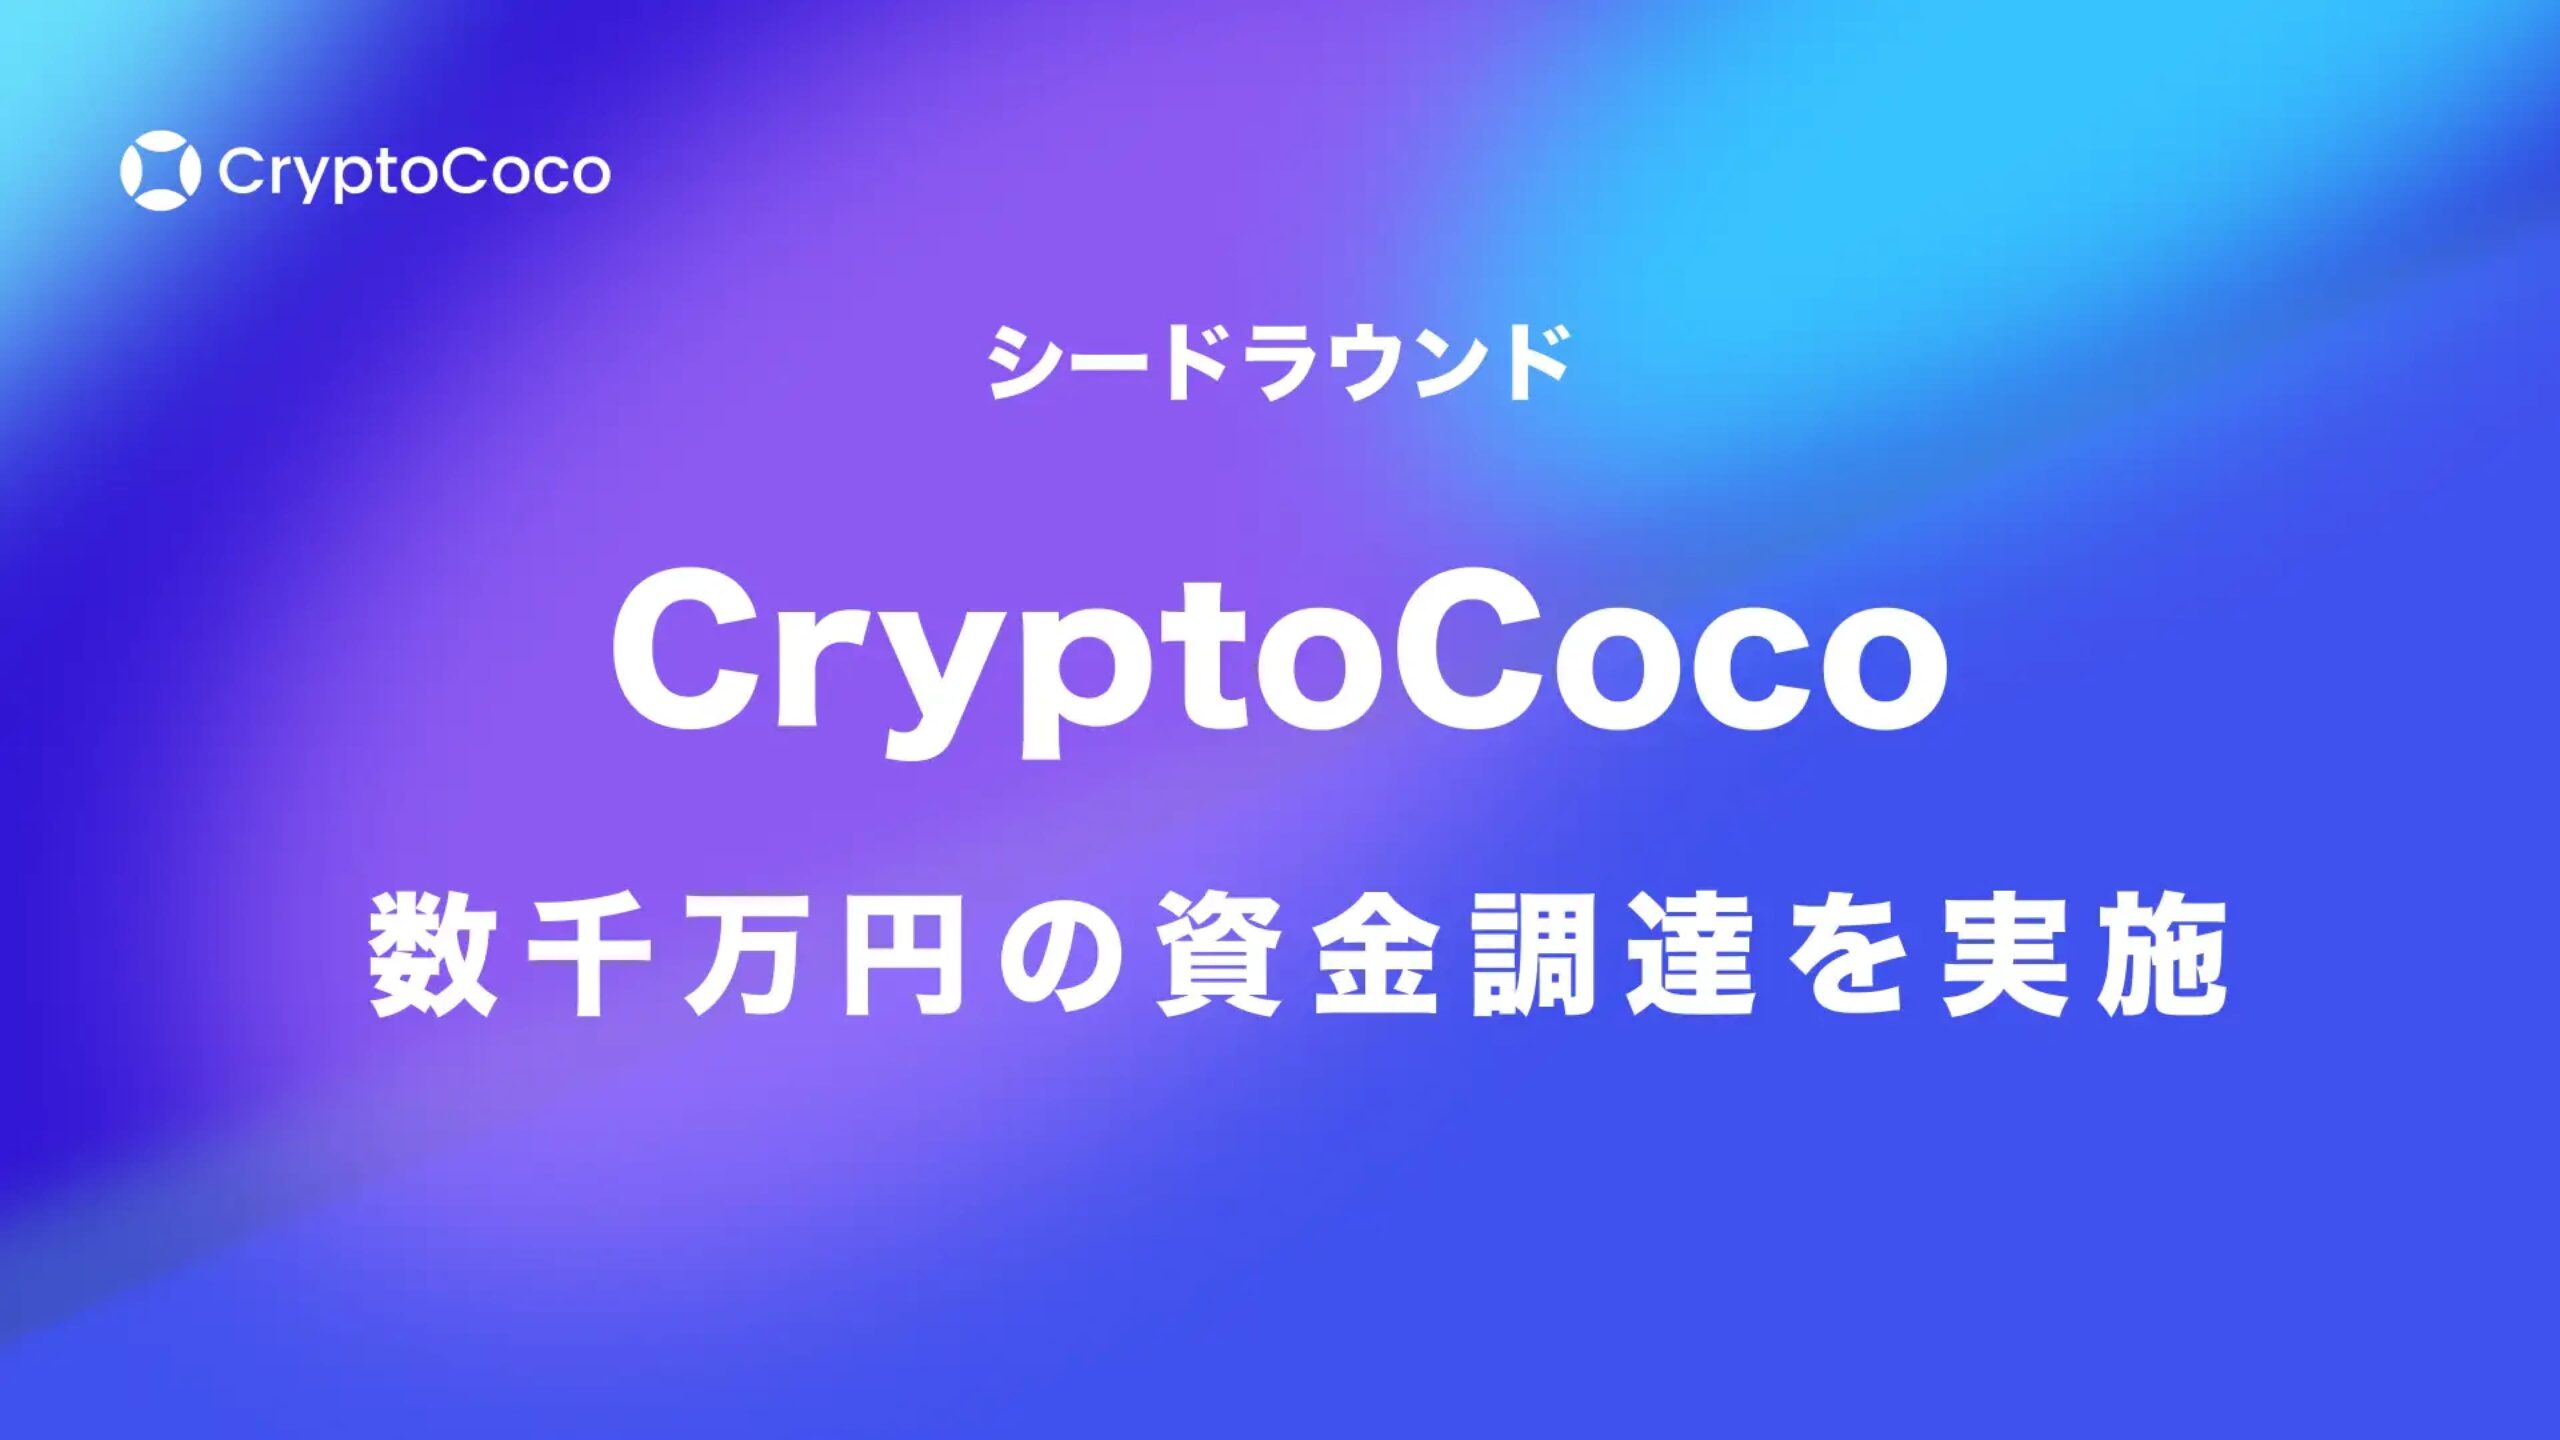 「CocoShop」を提供する株式会社CryptoCocoが資金調達